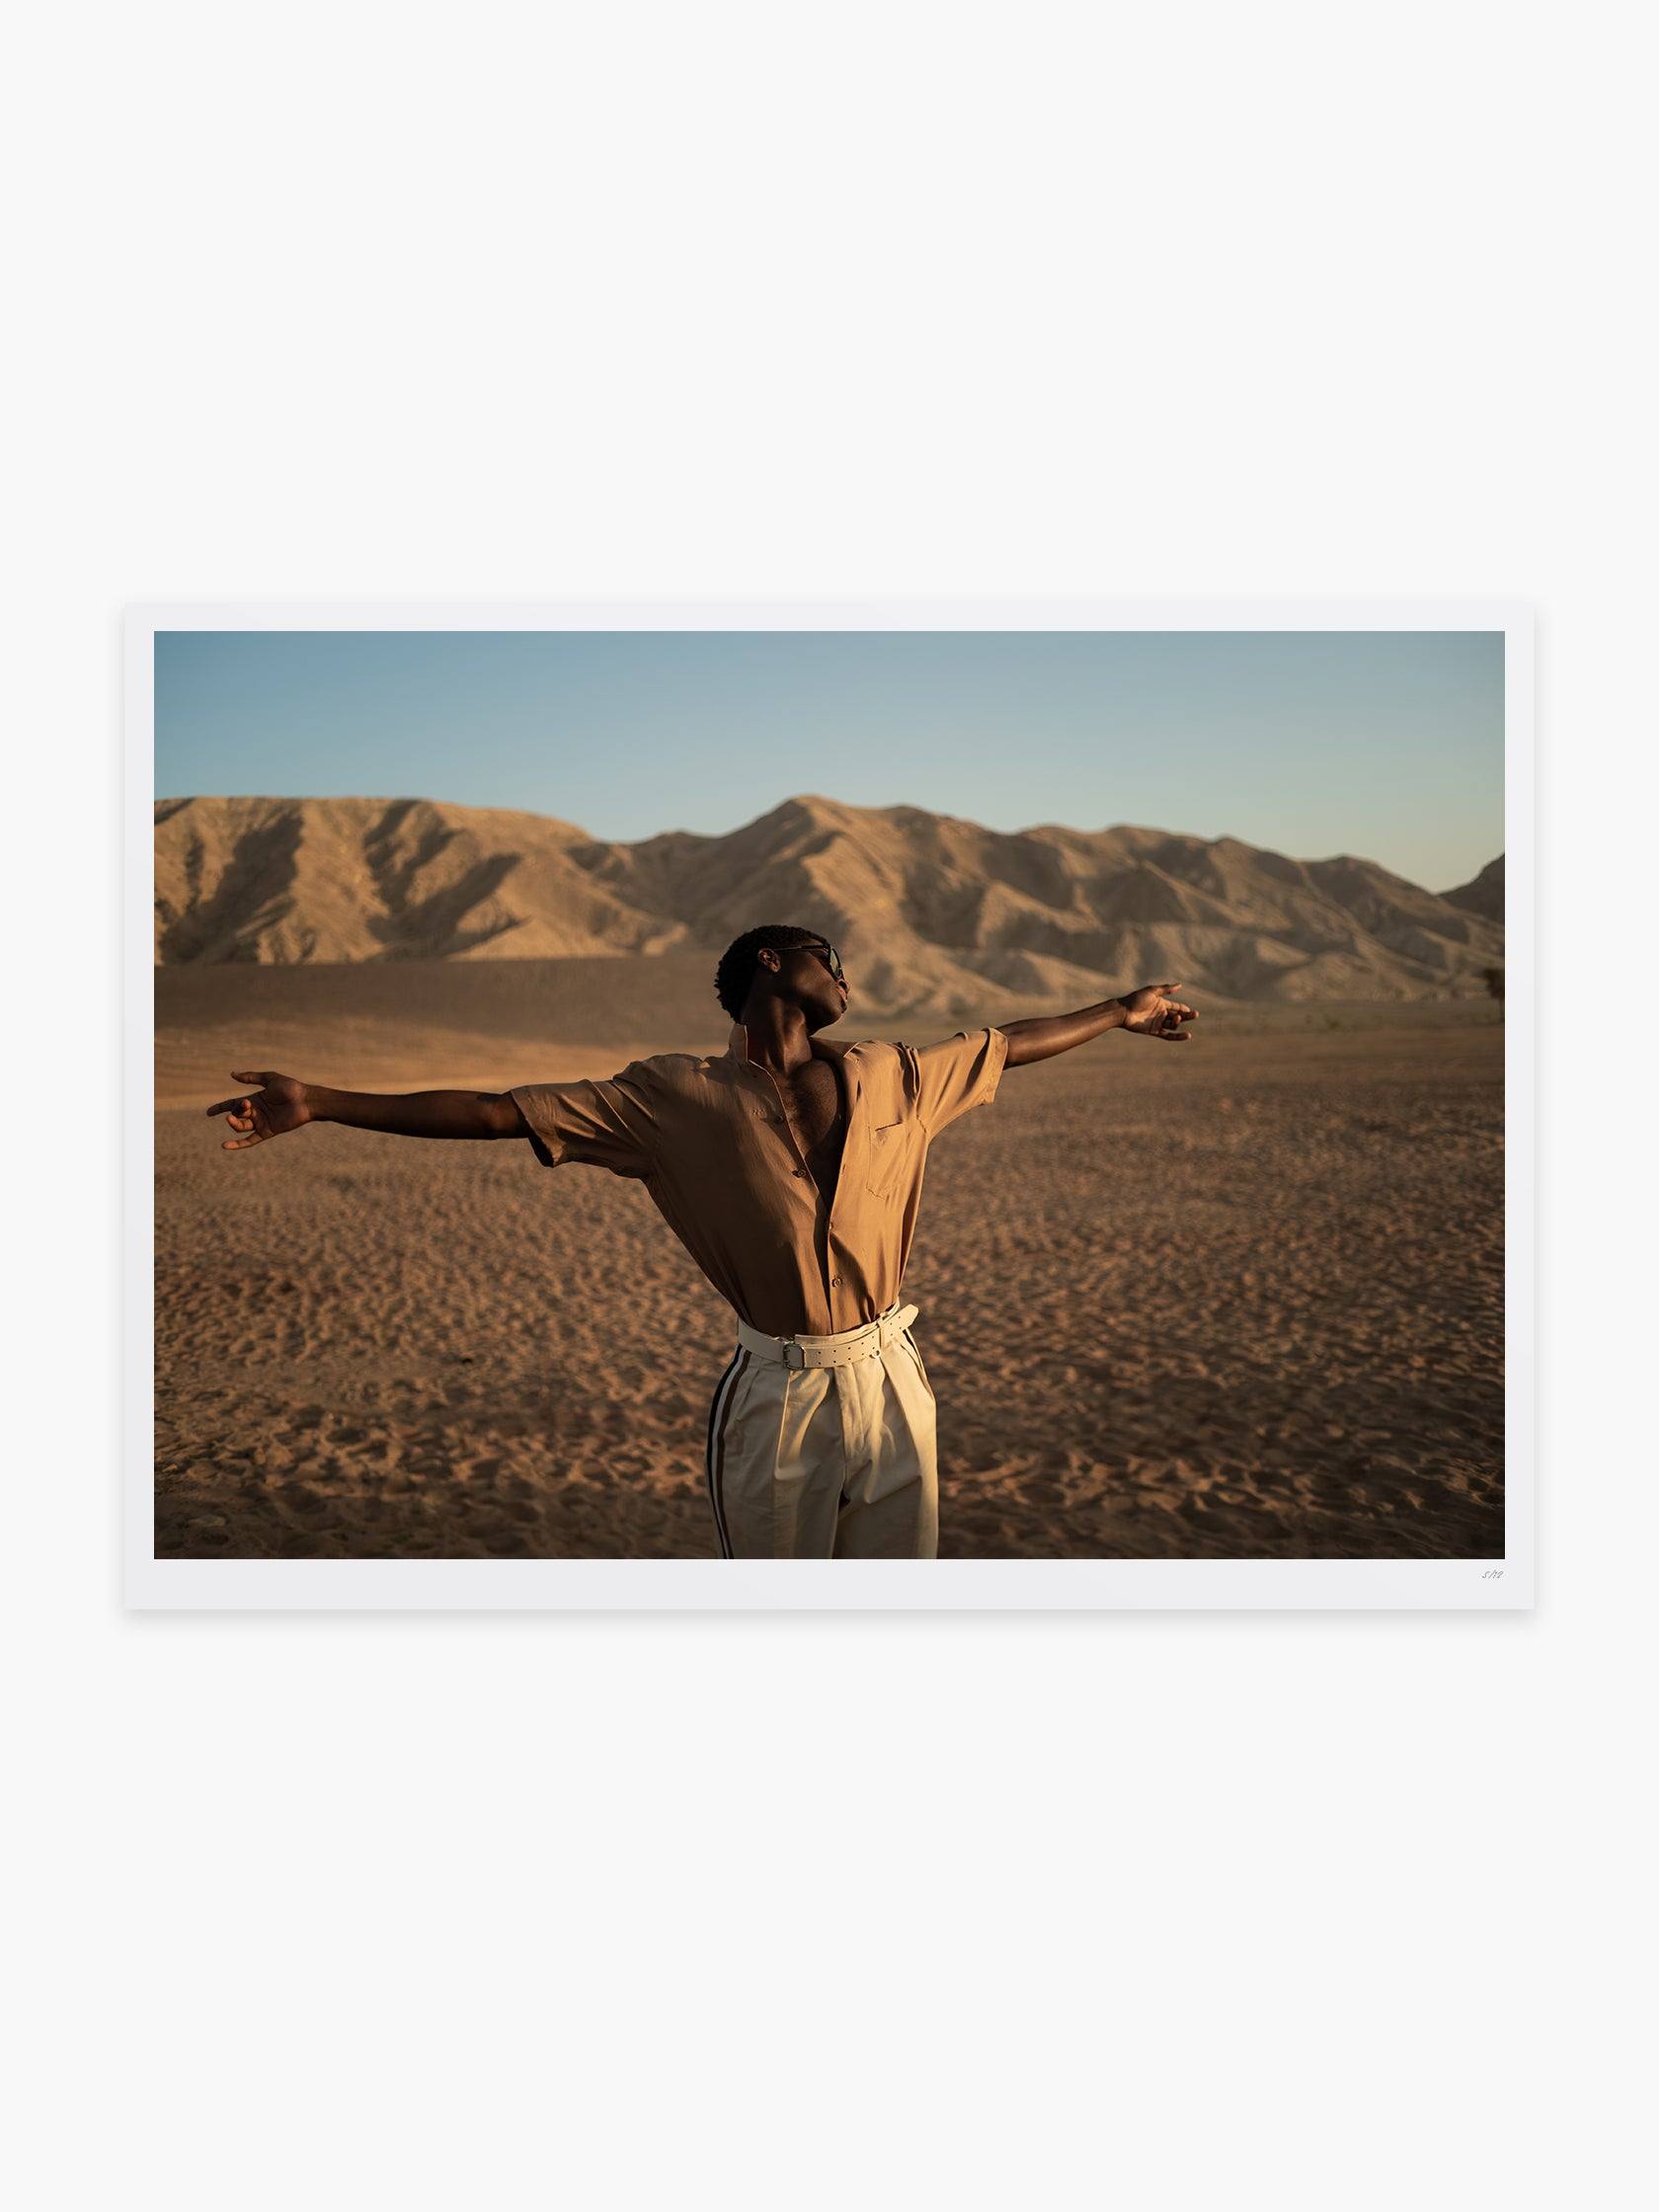 Alton Mason in the Al Faya Desert by Pat Domingo - Mankovsky Gallery